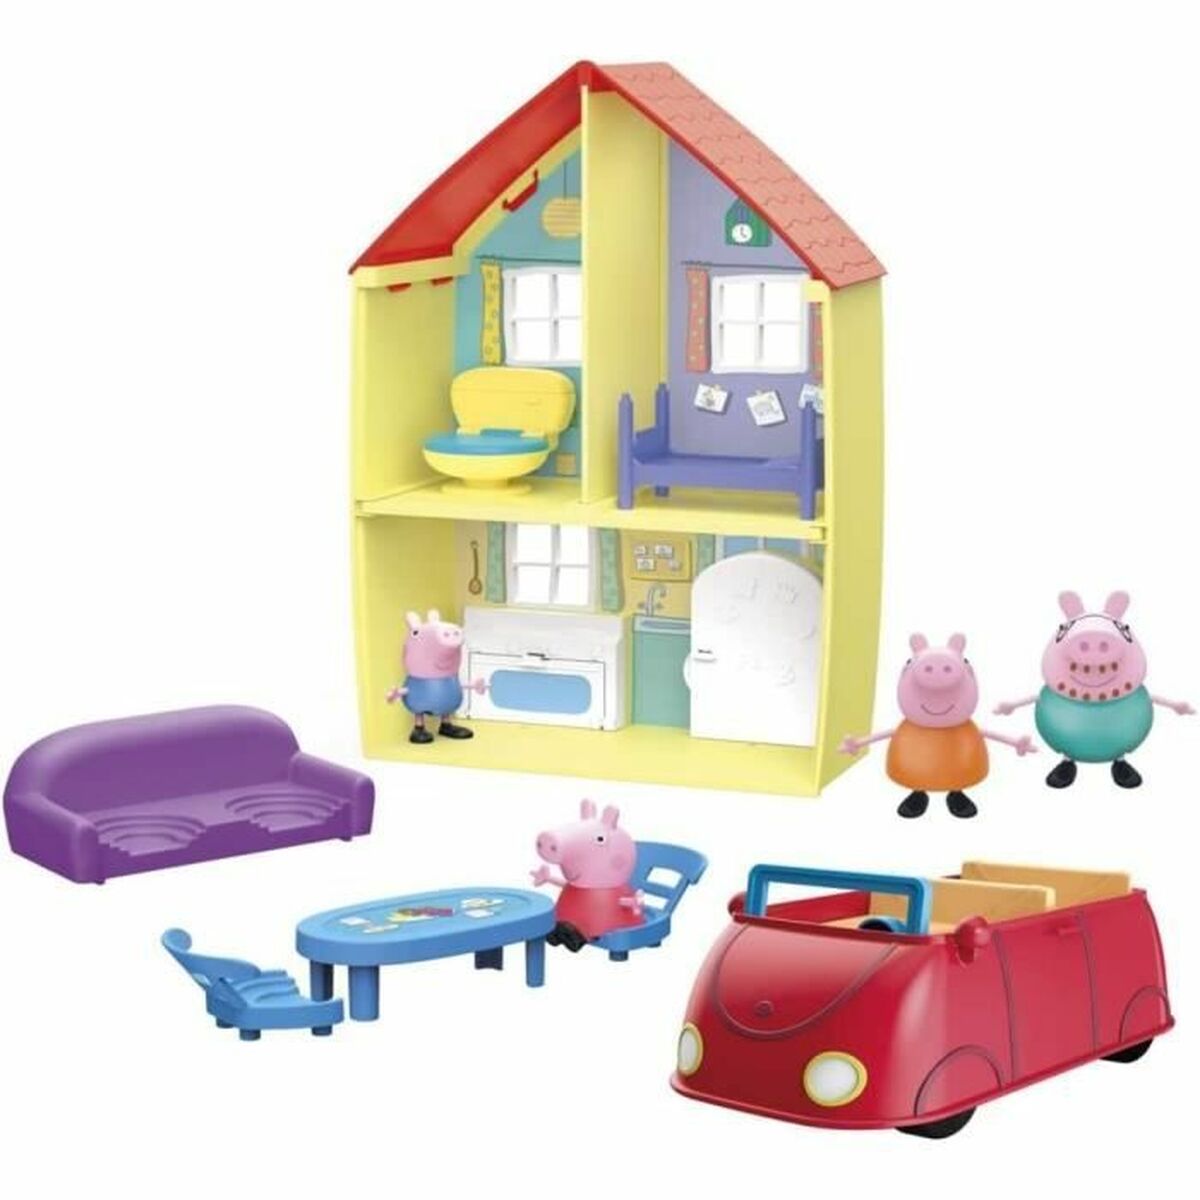 Playset Peppa Pig Family Home - Disponibile in 3-4 giorni lavorativi